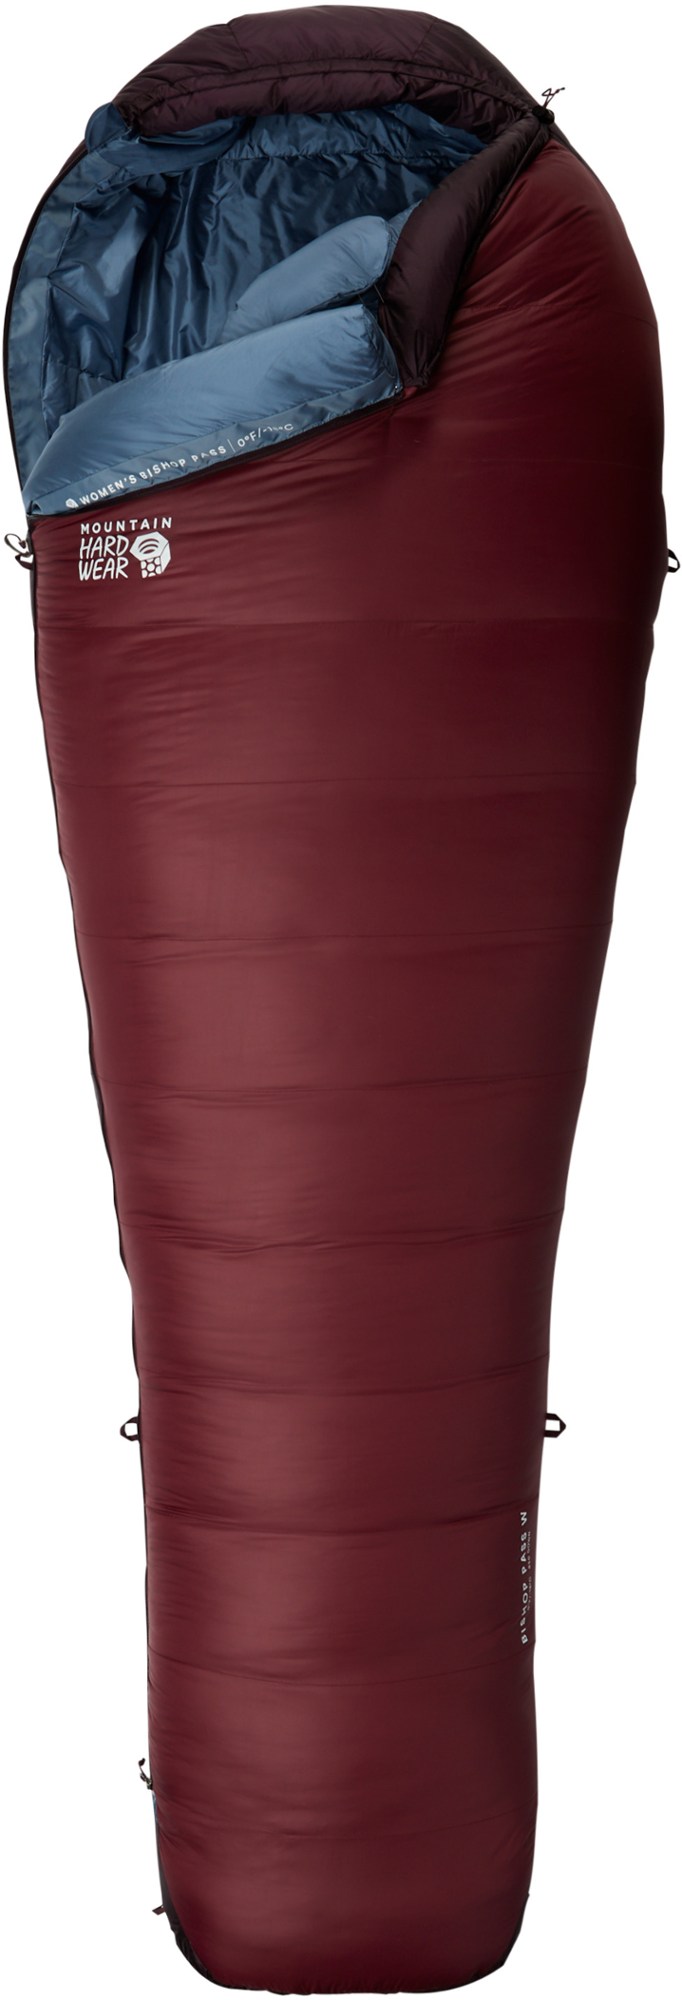 Спальный мешок Bishop Pass 0 - женский Mountain Hardwear, красный